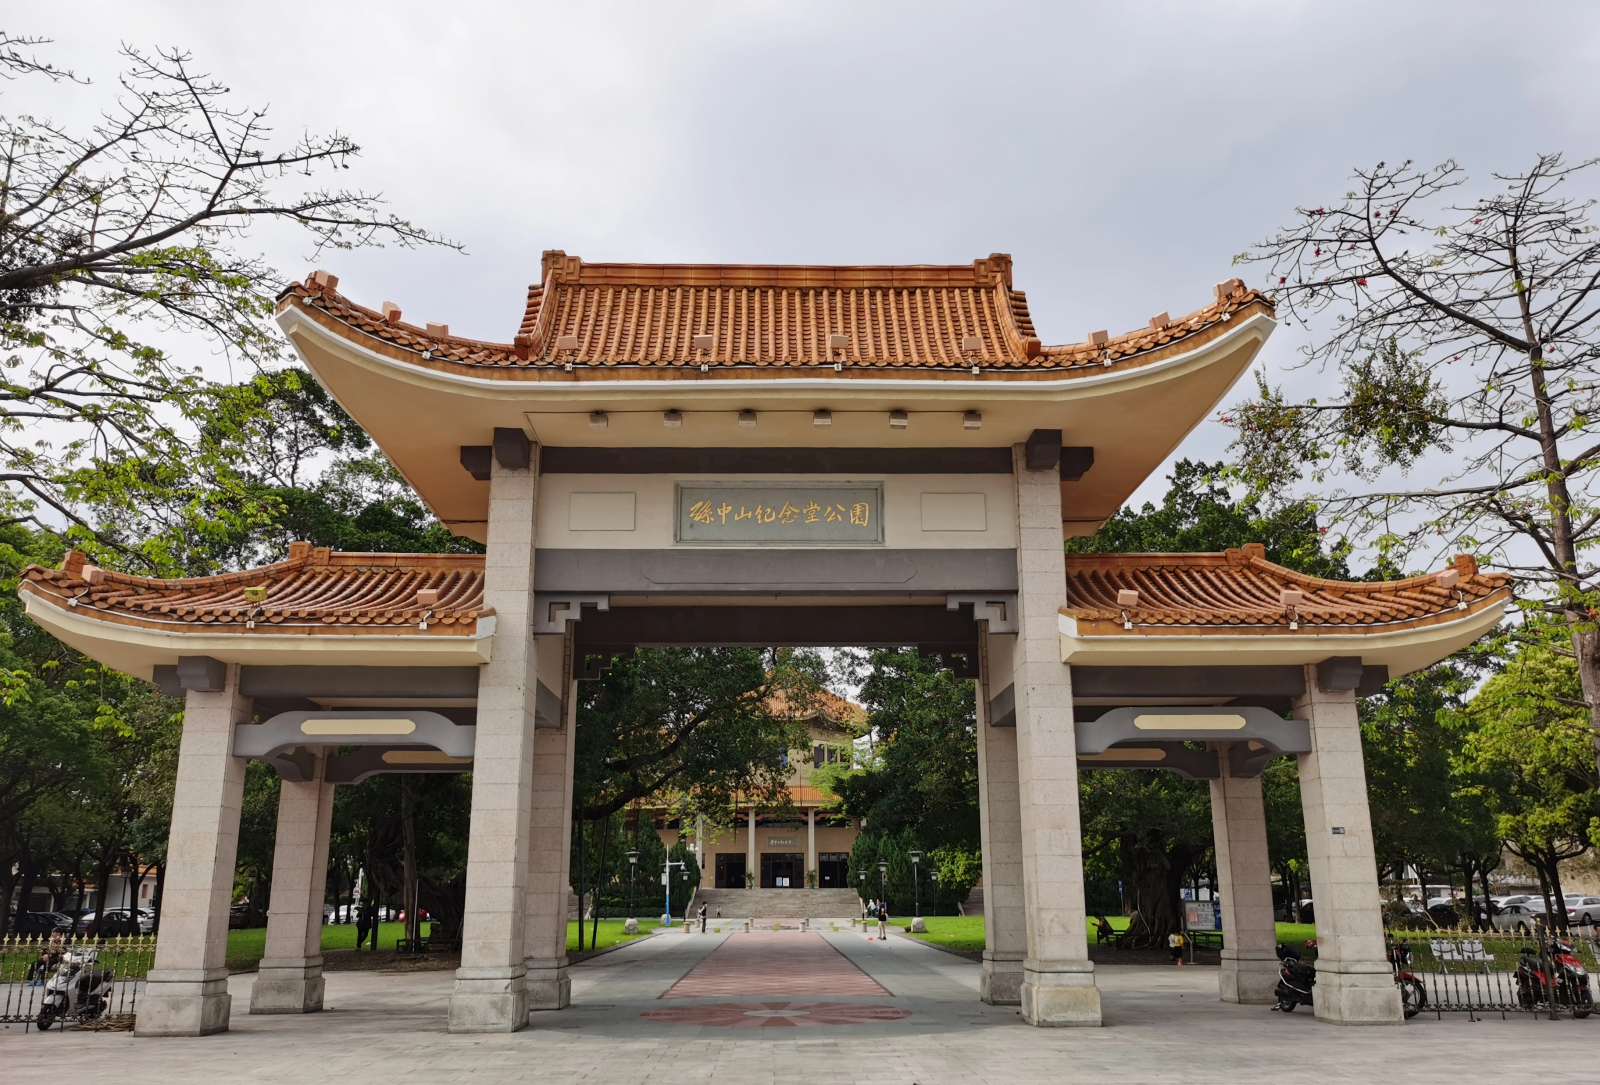 The Mausoleum Gate, Sun Yat-sen Memorial Hall